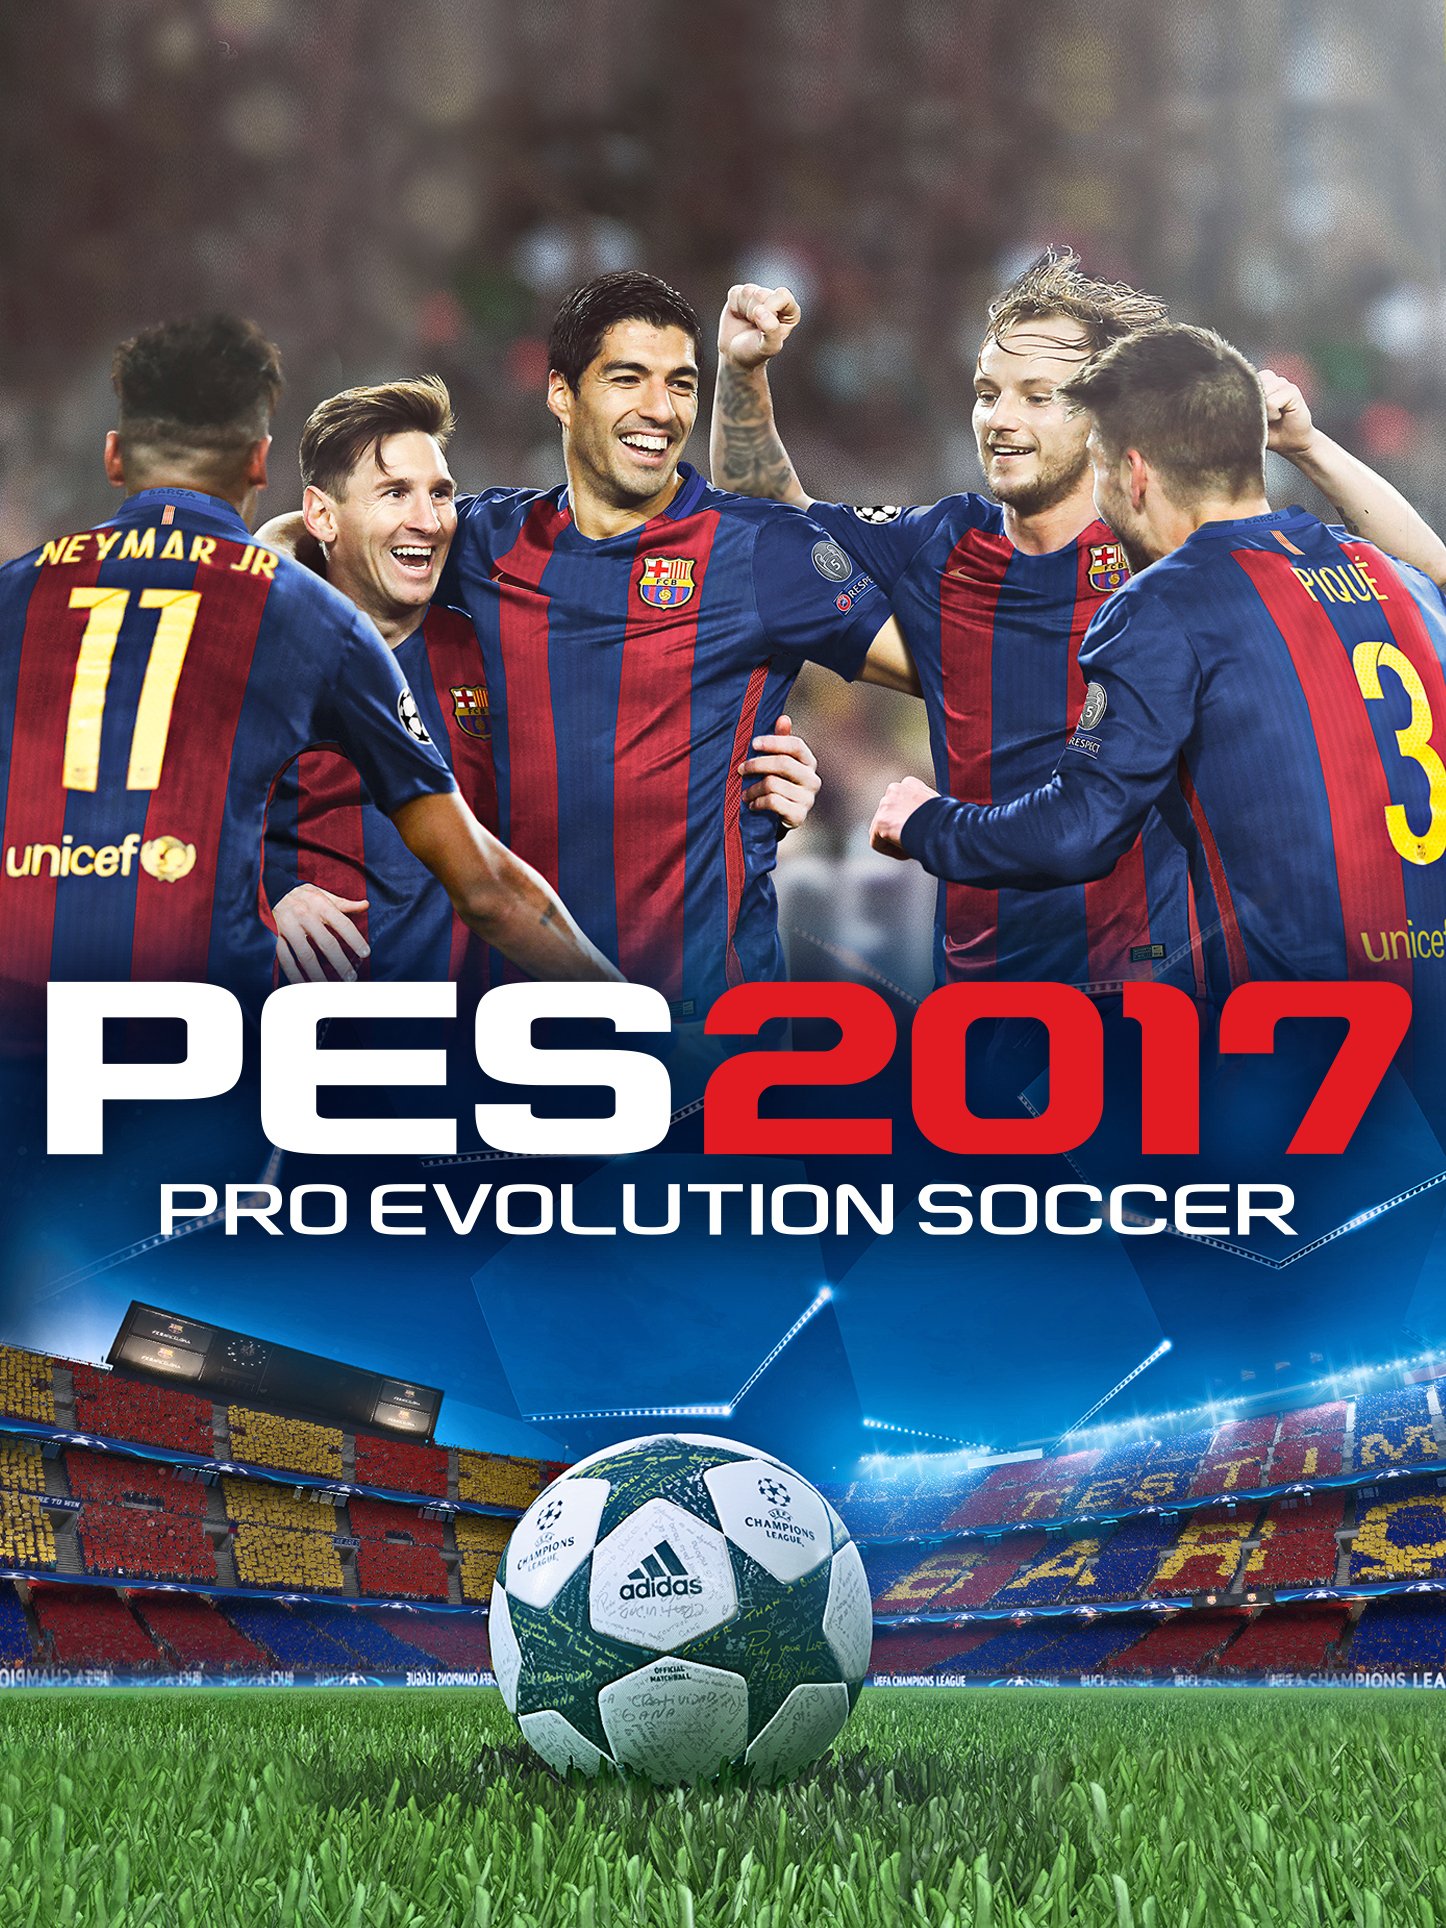 Image of Pro Evolution Soccer 2017